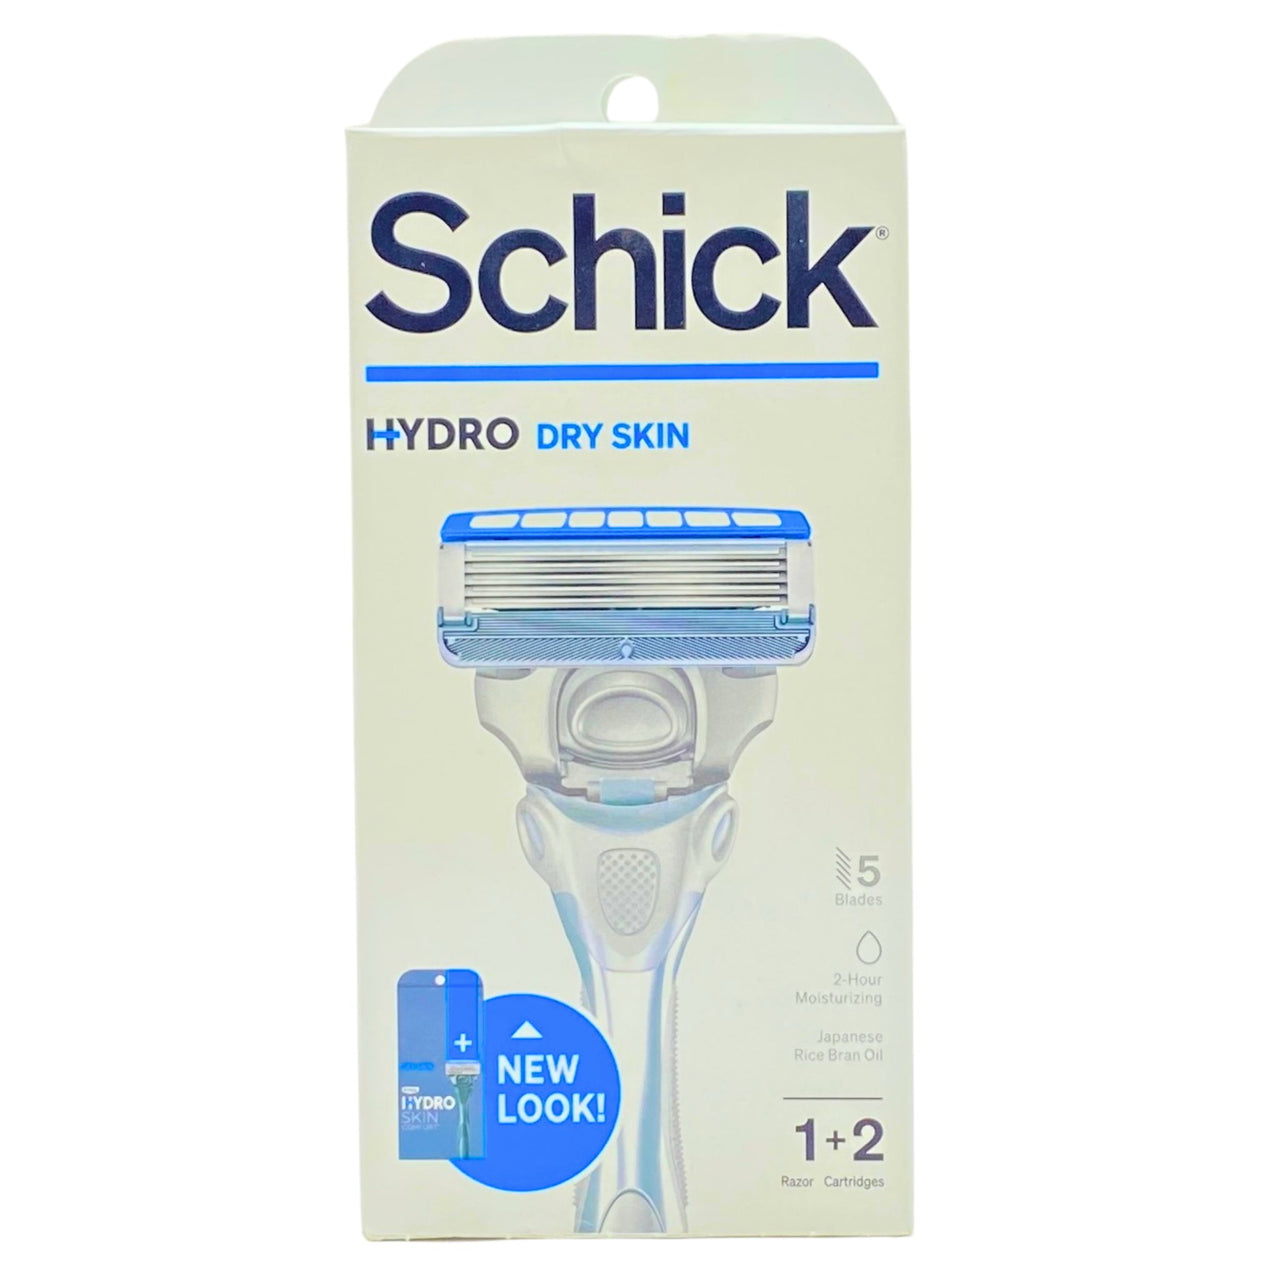 Schick Hydro Dry Skin